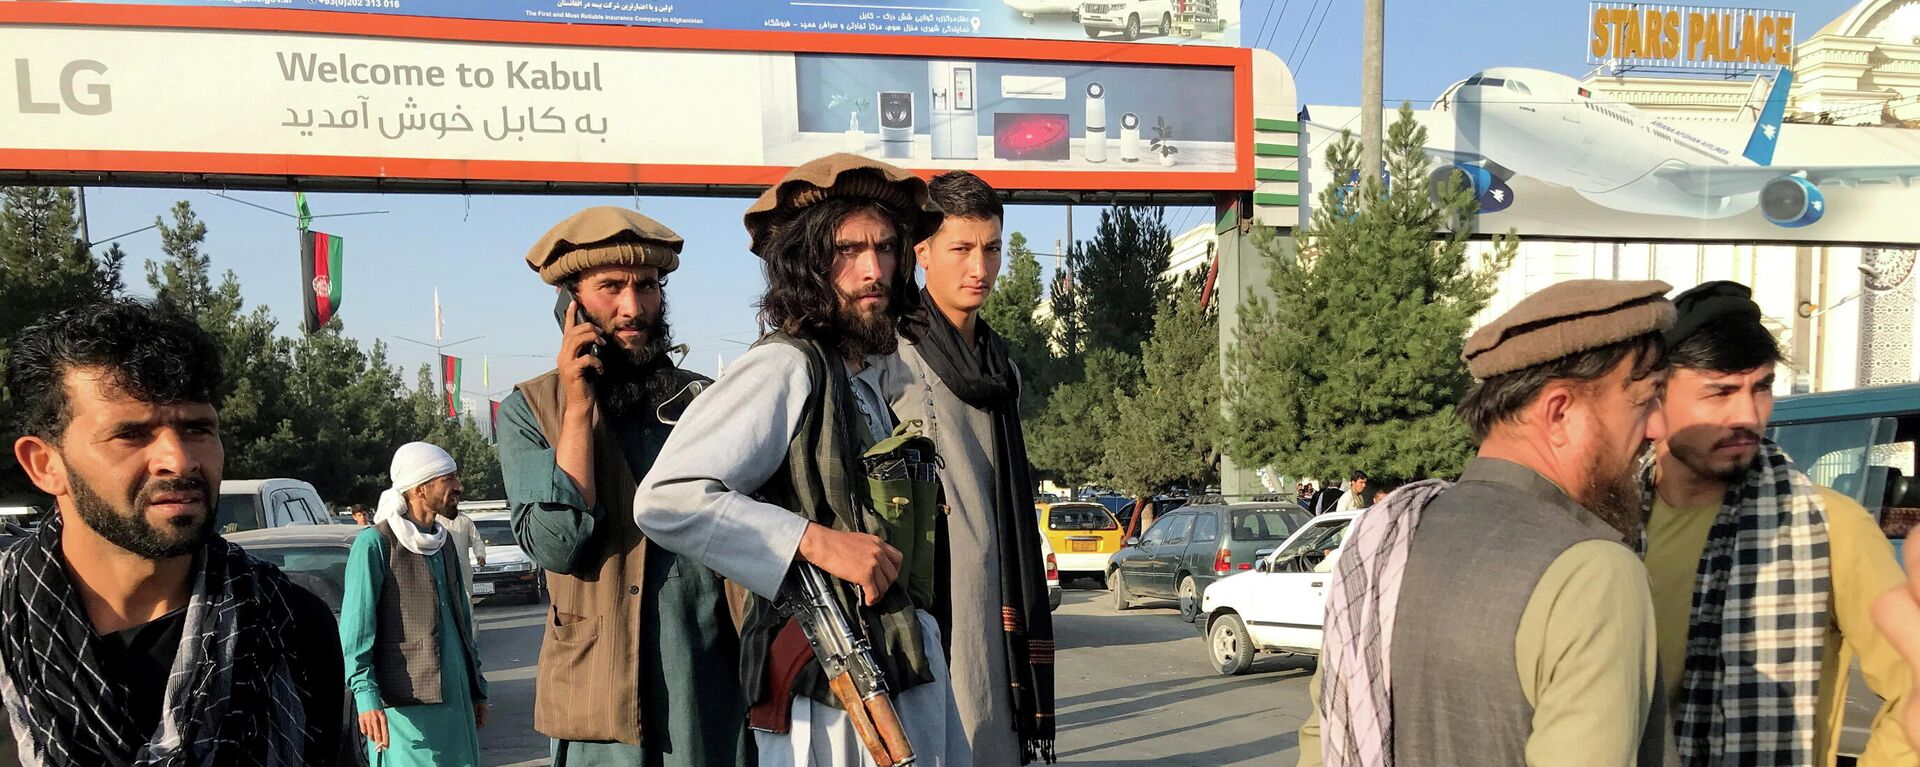 Бойцы Талибана стоят возле международного аэропорта в Кабуле - Sputnik Lietuva, 1920, 07.09.2021